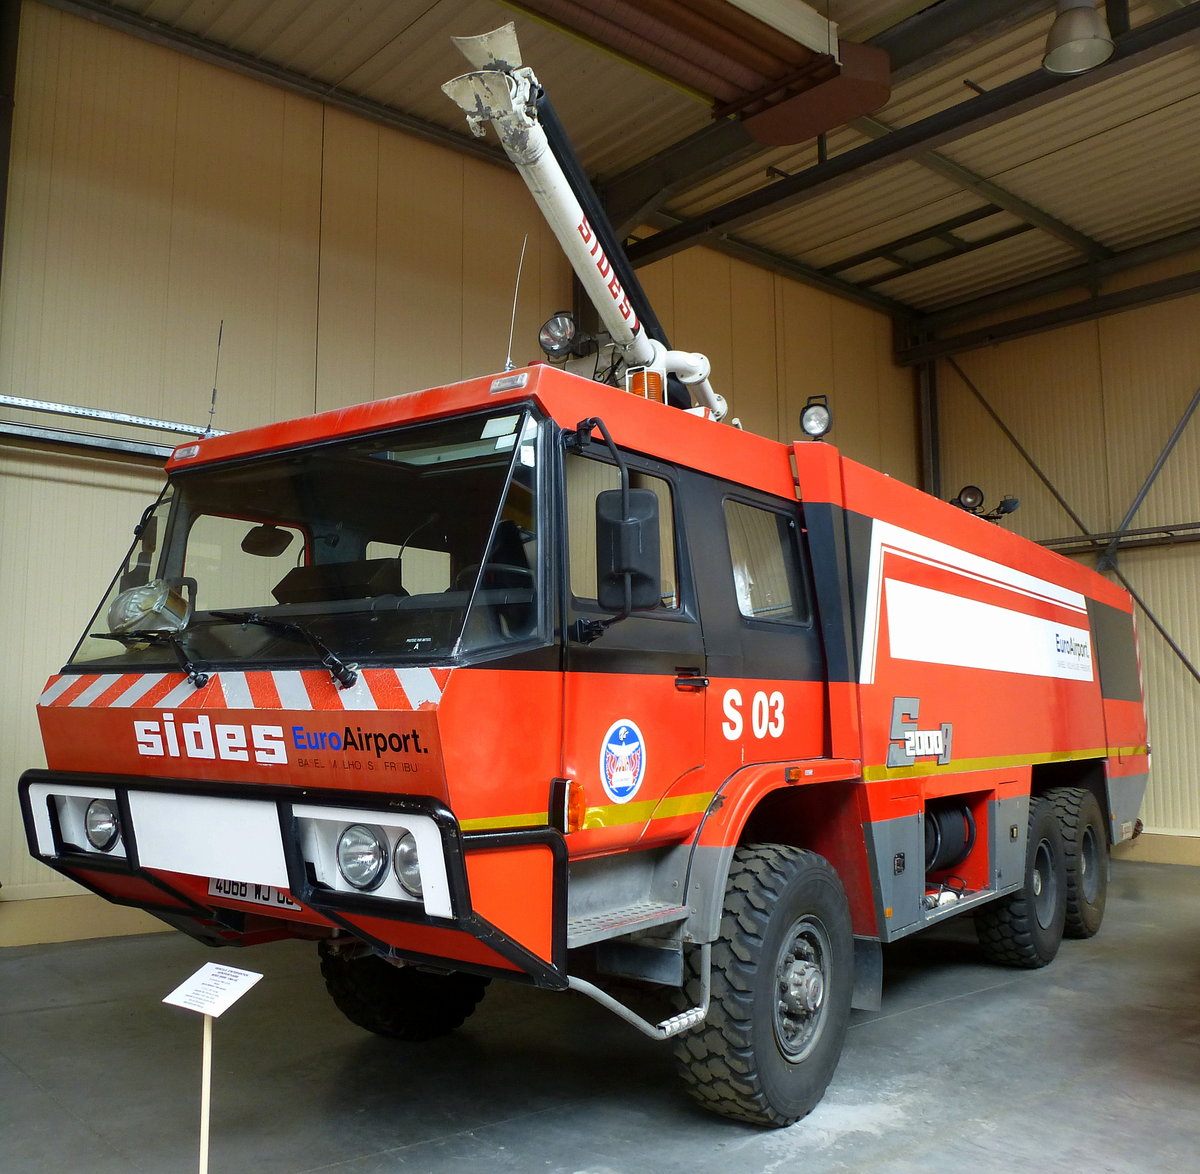 Mack-Renault 540, Flughafenfeuerwehr, von 1994-2015 im Dienst des Euro-Airport Basel-Mlhausen, Lschmitteltank mit 10100 Litern, Feuerwehrmuseum Ferrette, Mai 2016